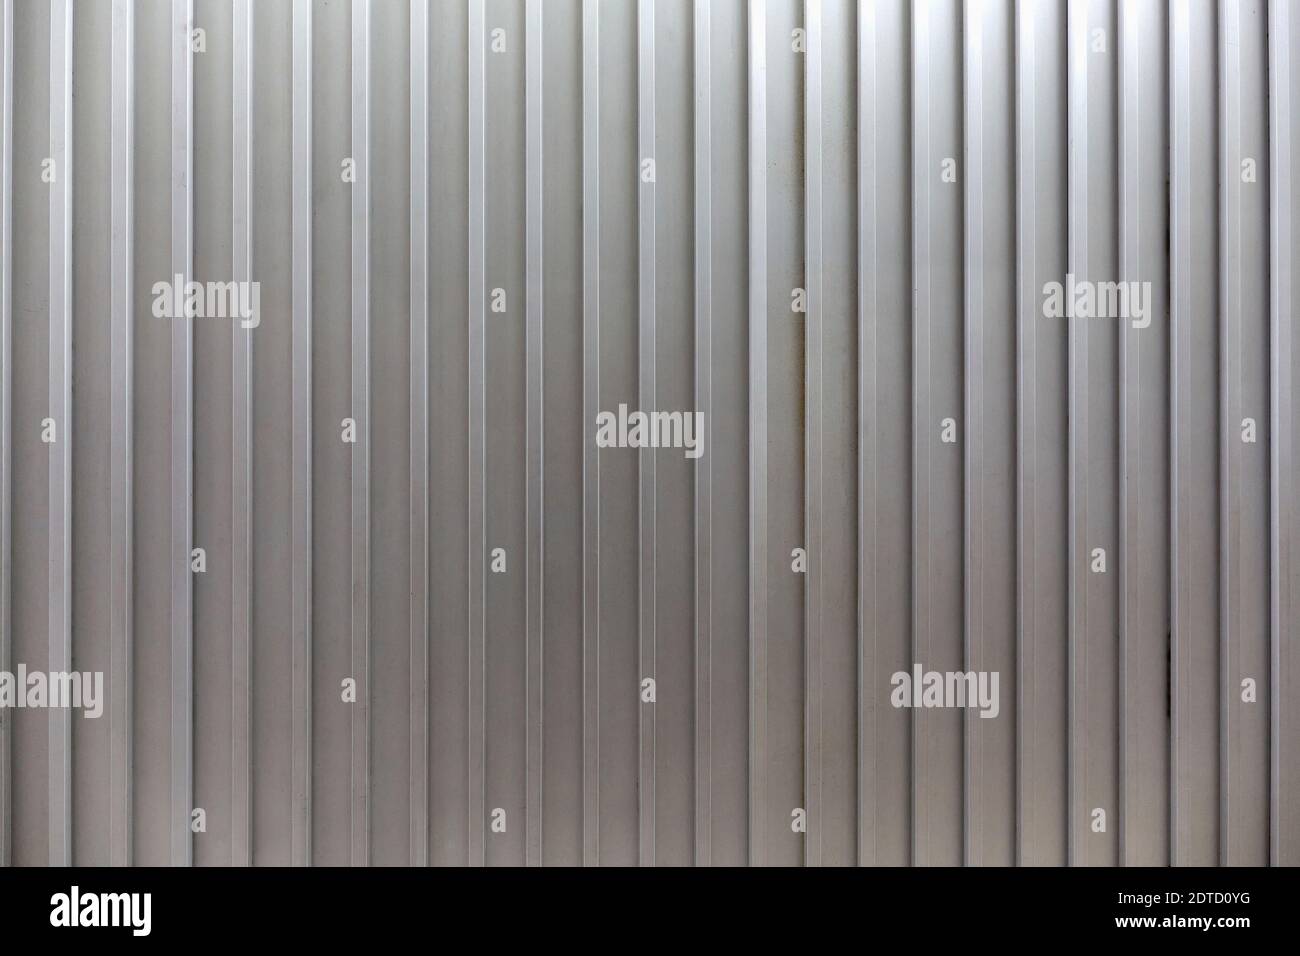 Corrugated iron full frame Stock Photo